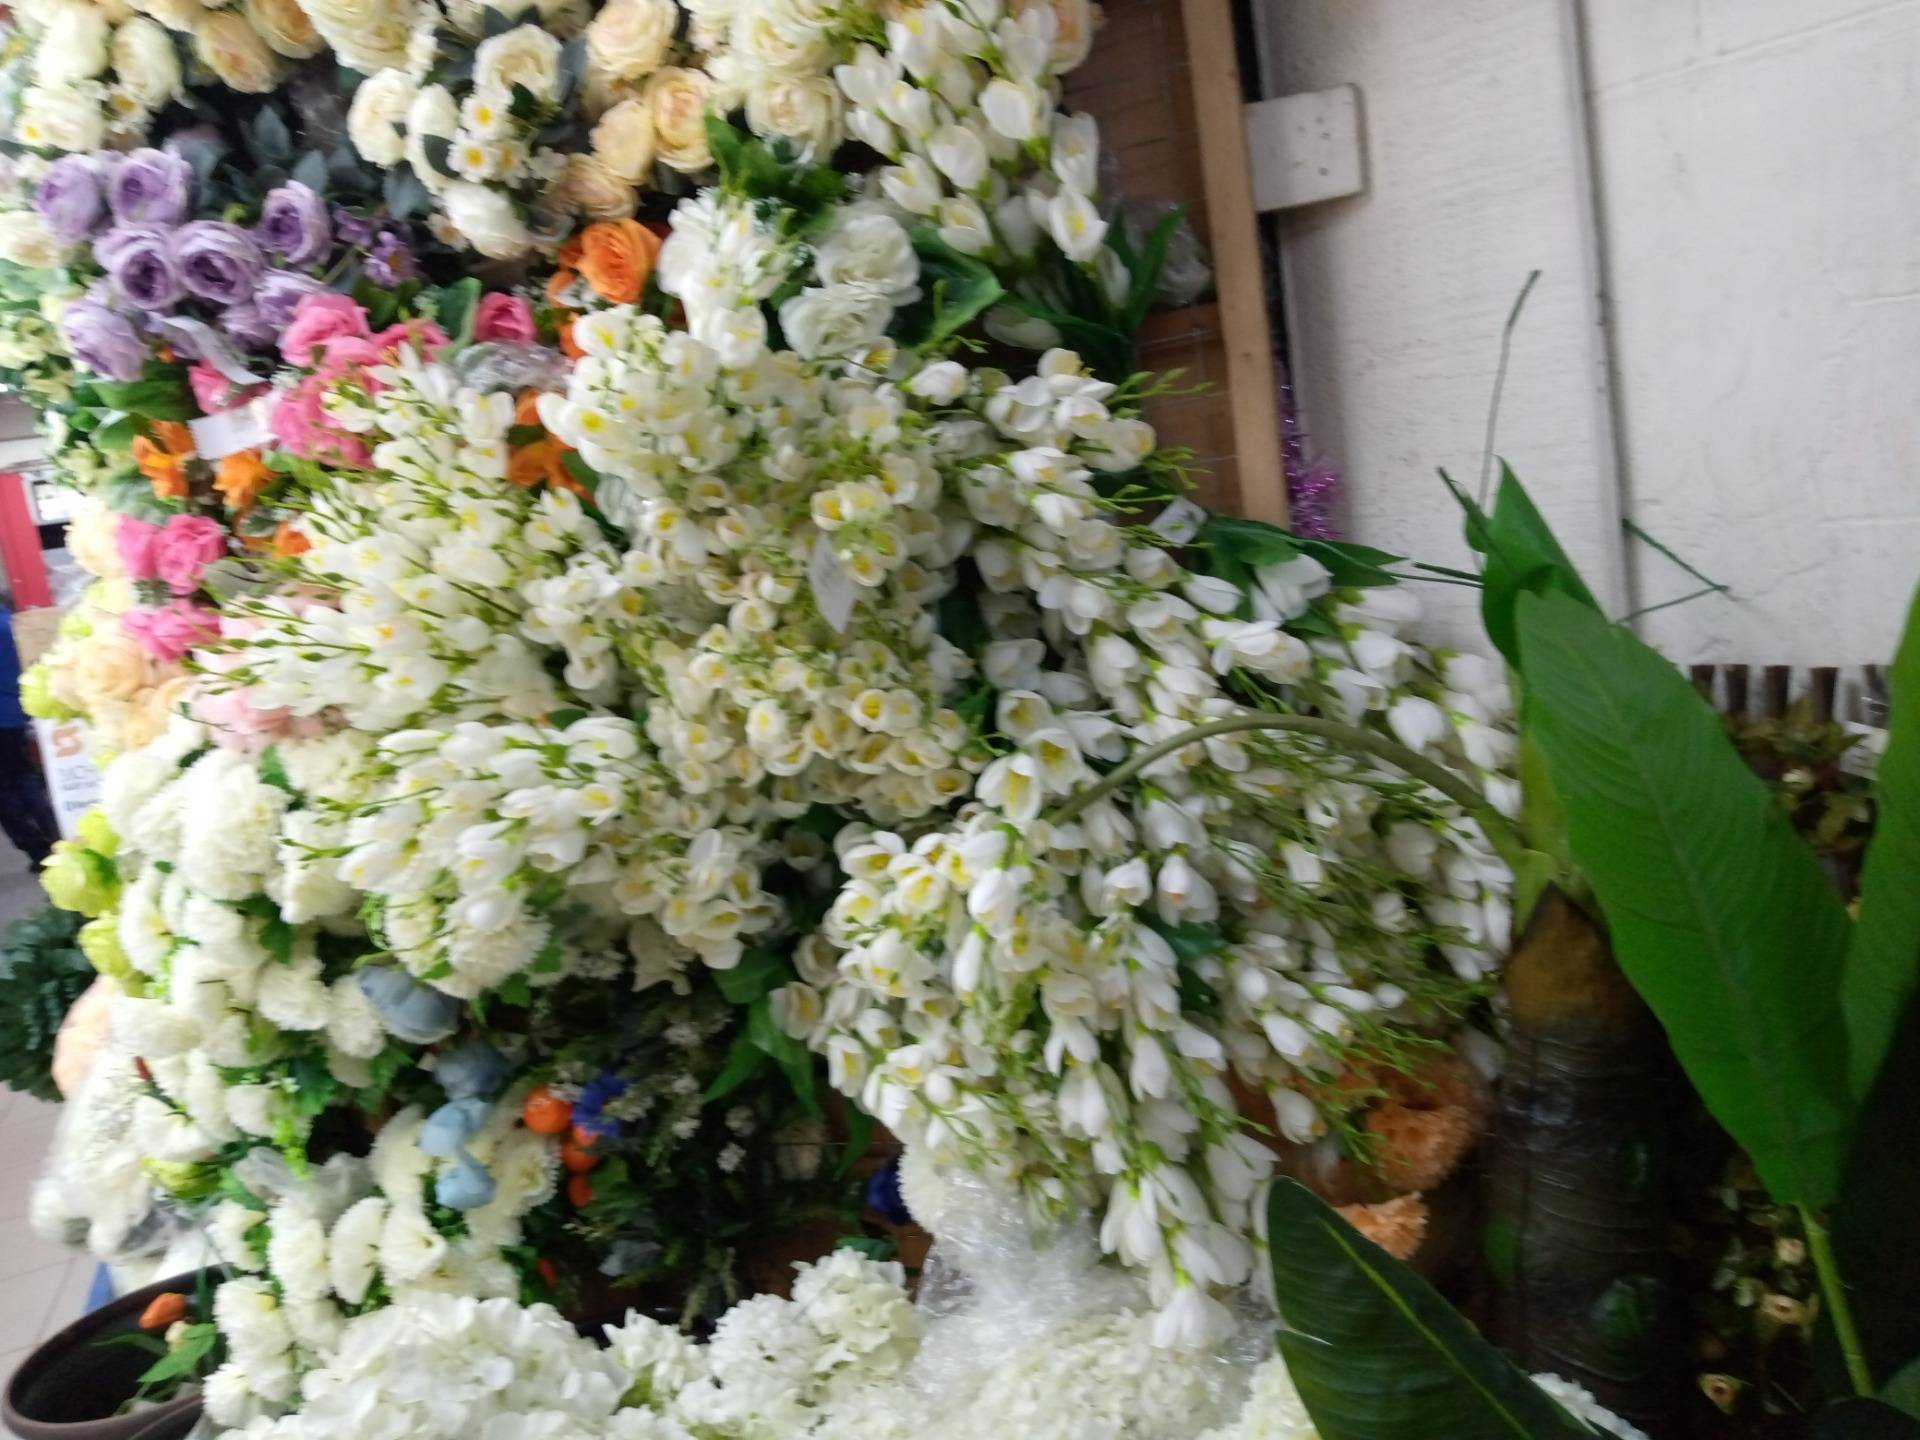 Flowers display